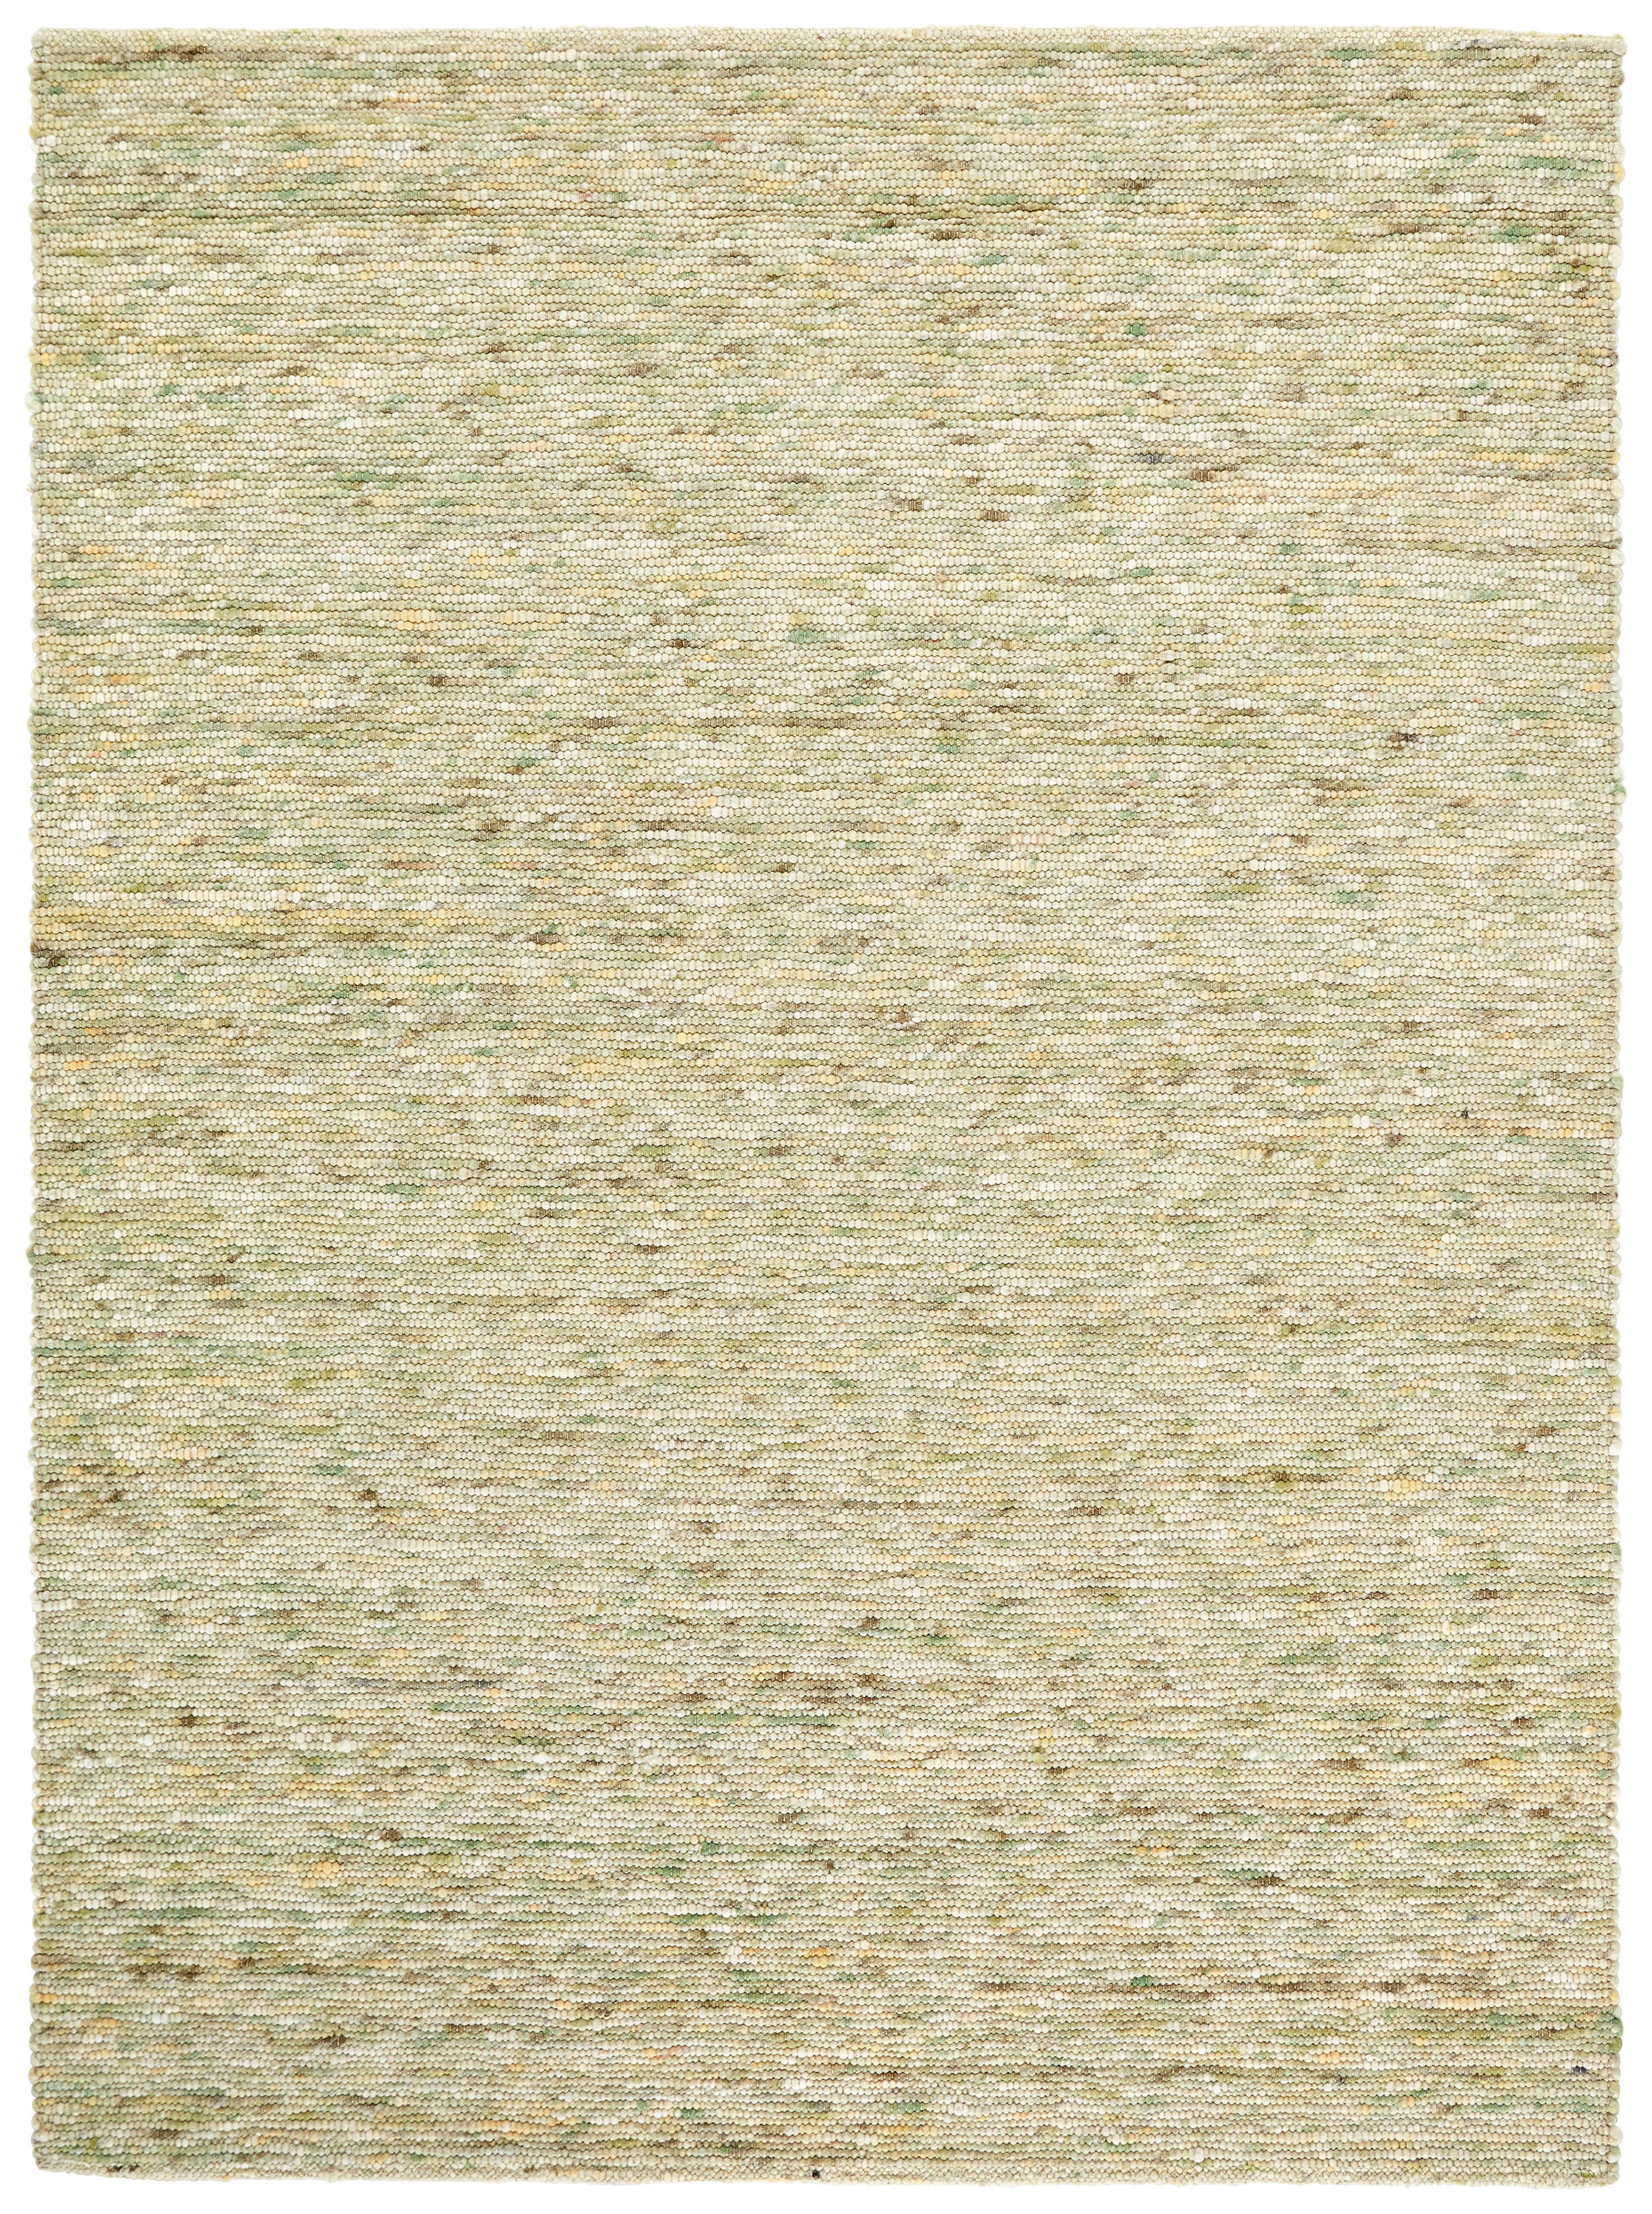 Wollteppich gewalkt  70/130 cm  Grün   - Grün, Basics, Naturmaterialien (70/130cm) - Linea Natura